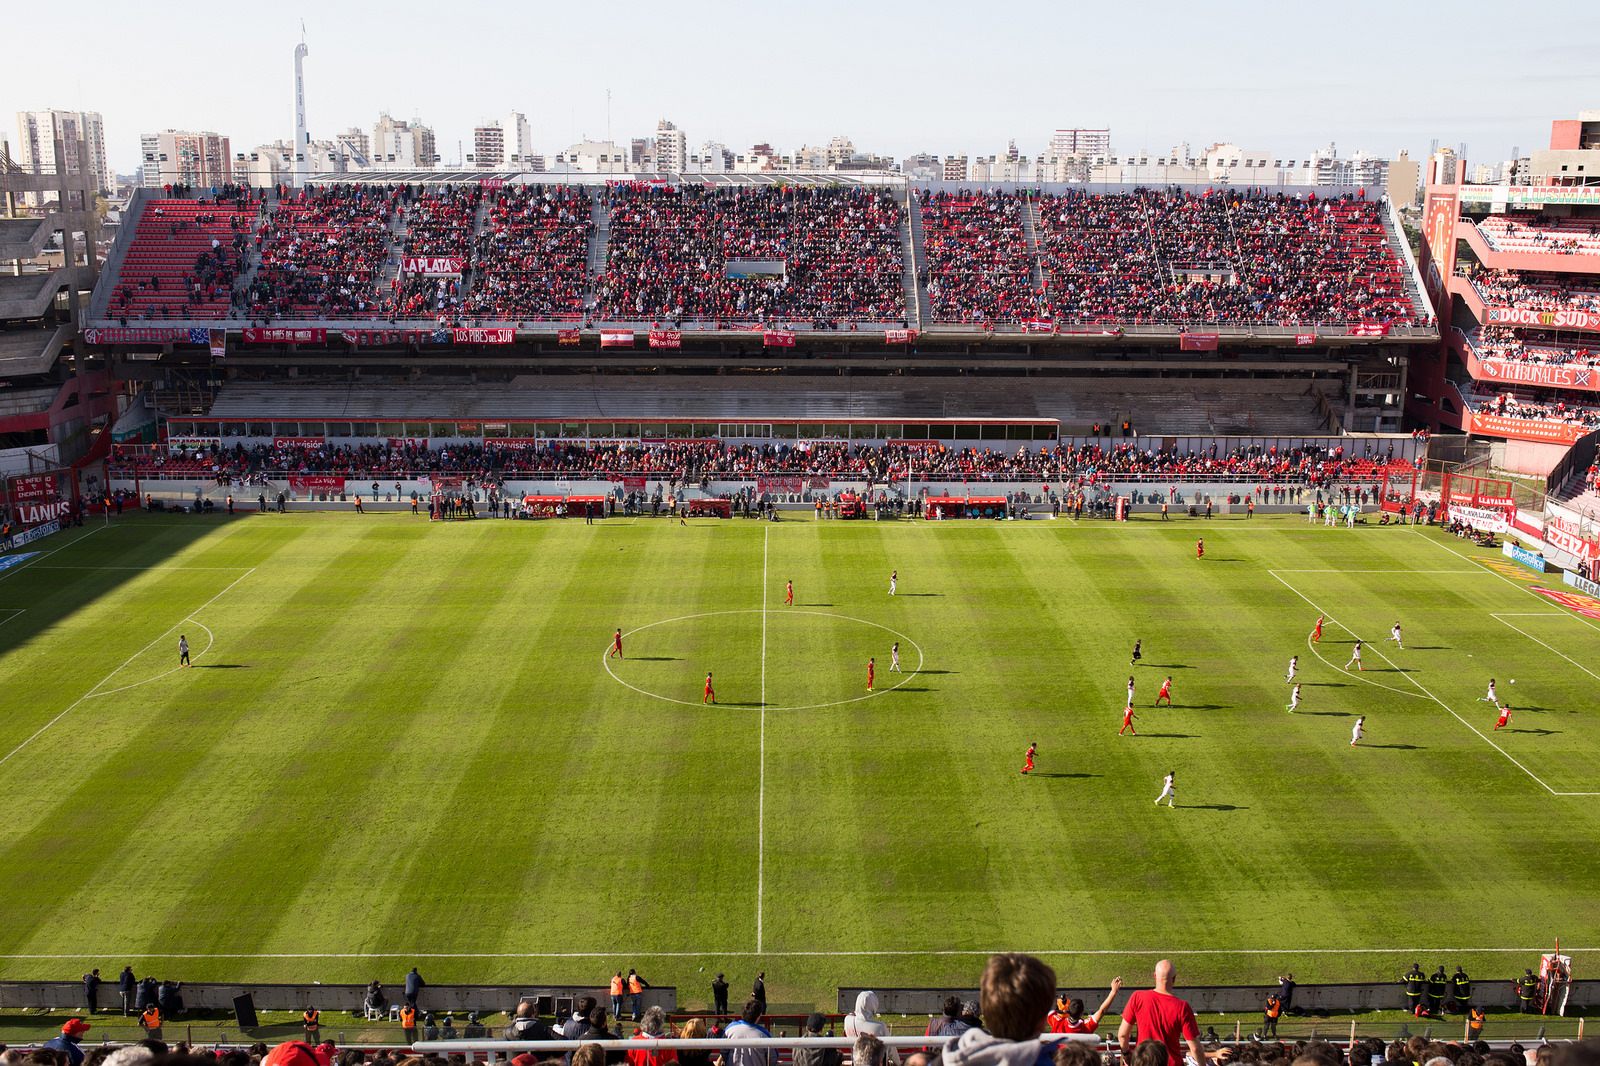 Estádio Libertadores da América - Avellaneda